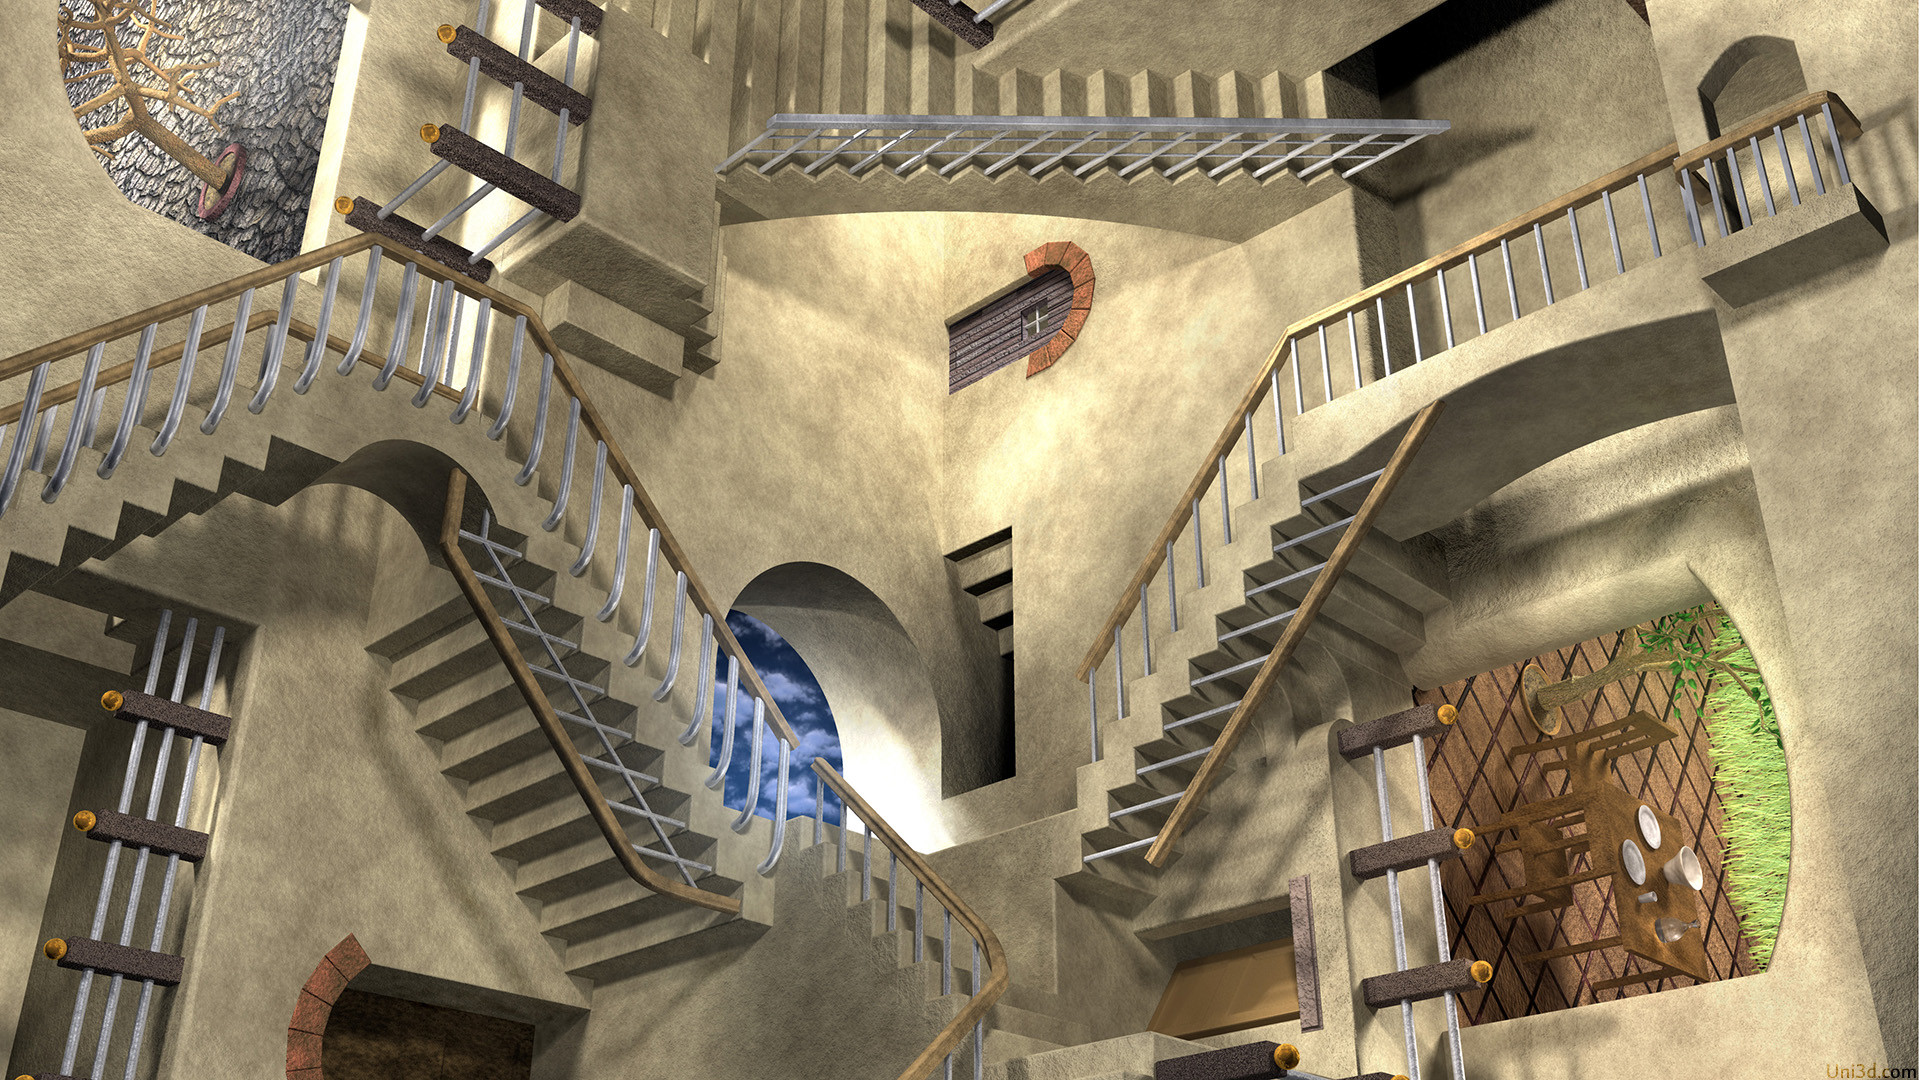 mc escher wallpaper,die architektur,gebäude,bogen,treppe,mittelalterliche architektur